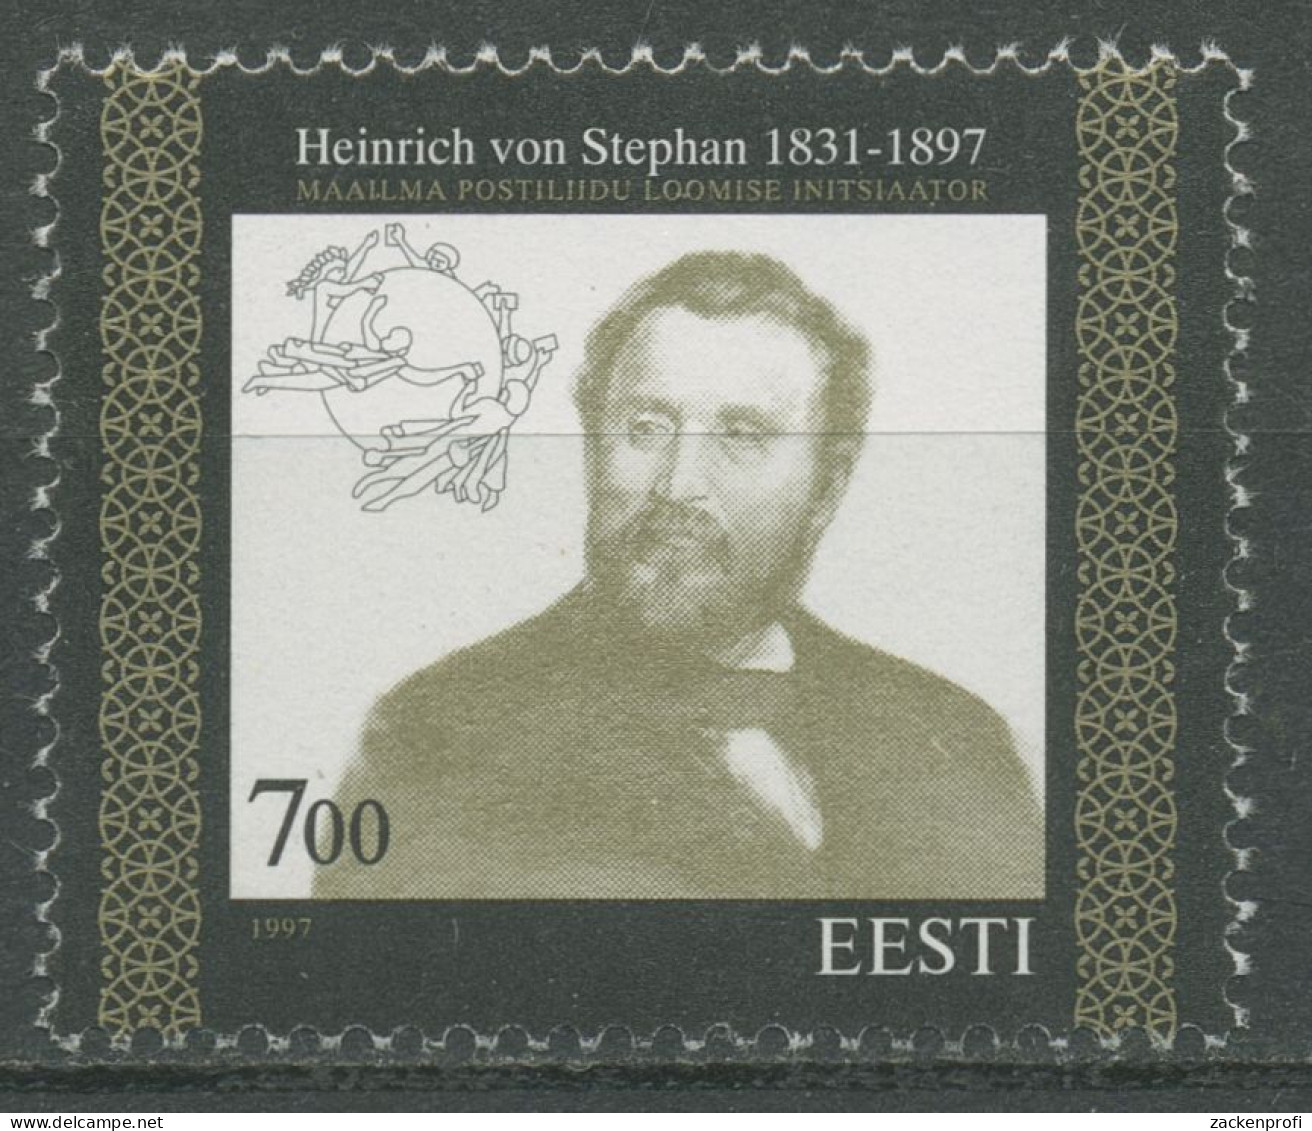 Estland 1997 Weltpostverein UPU Heinrich V. Stephan 300 Postfrisch - Estonie